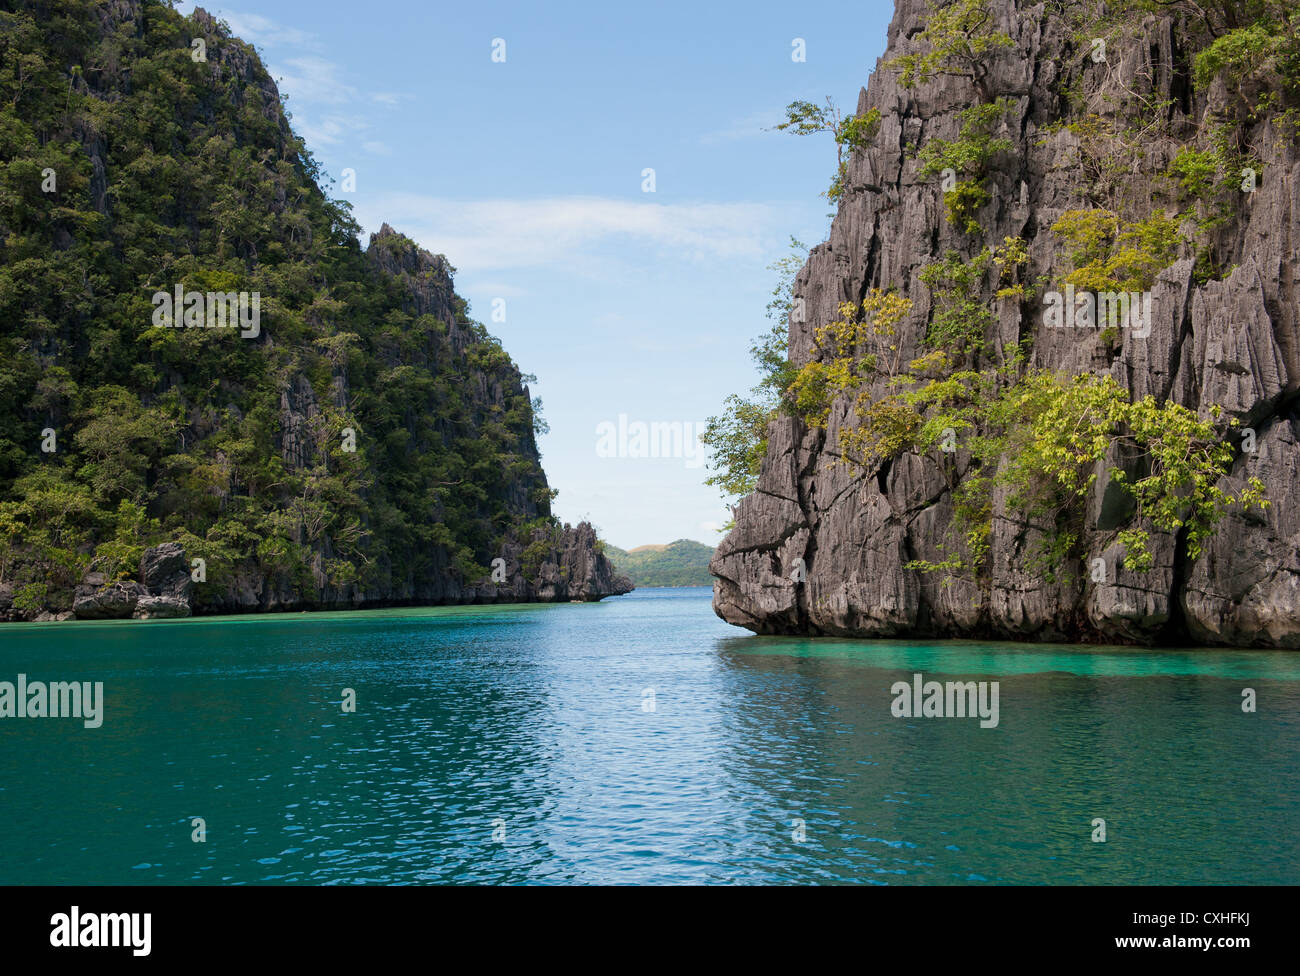 Coron island, Philippines Stock Photo